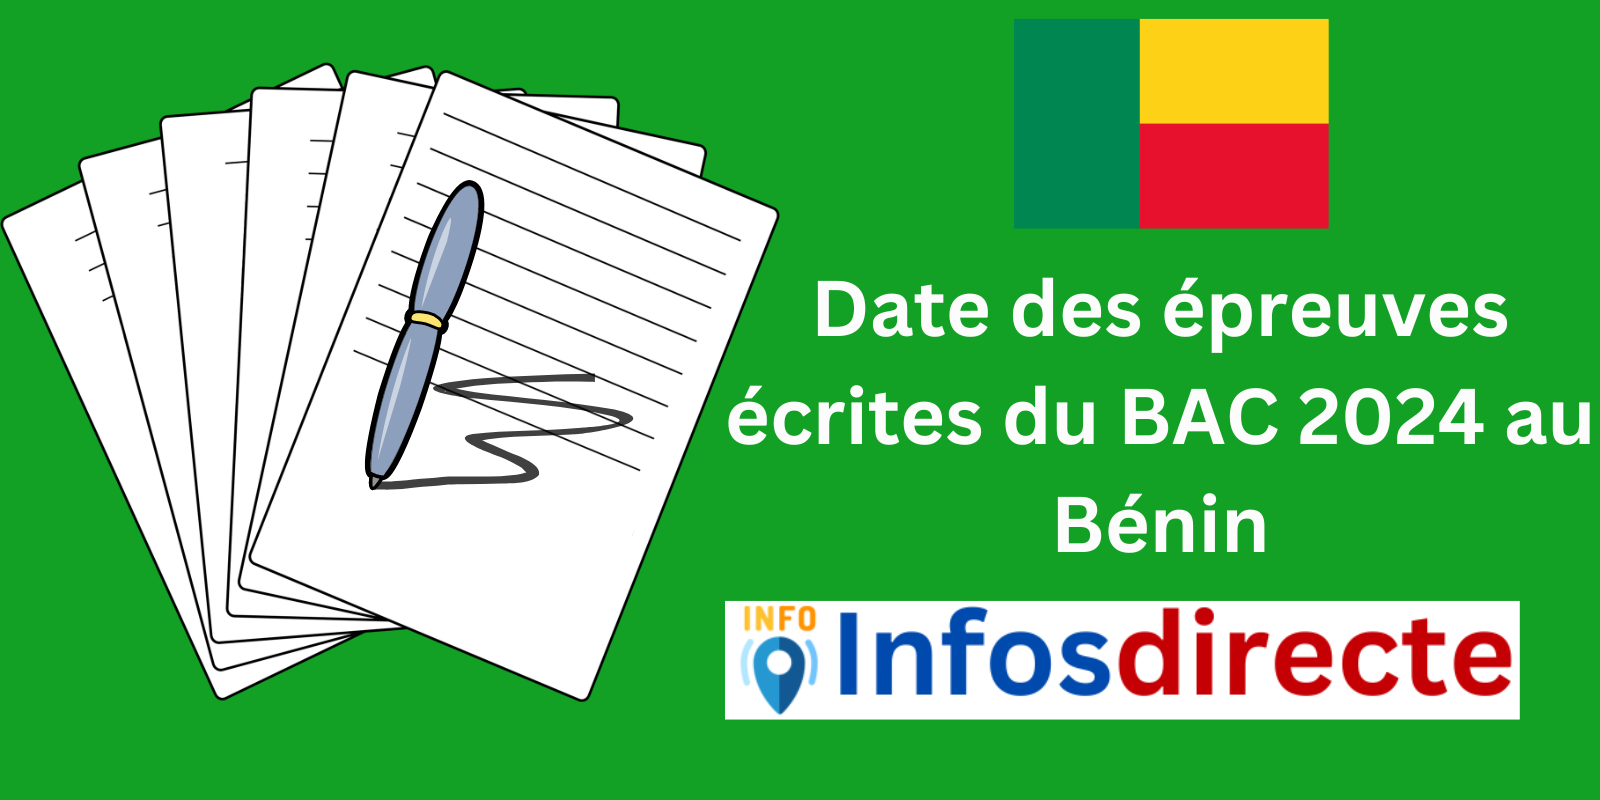 Date des épreuves écrites du BAC 2024 au Bénin